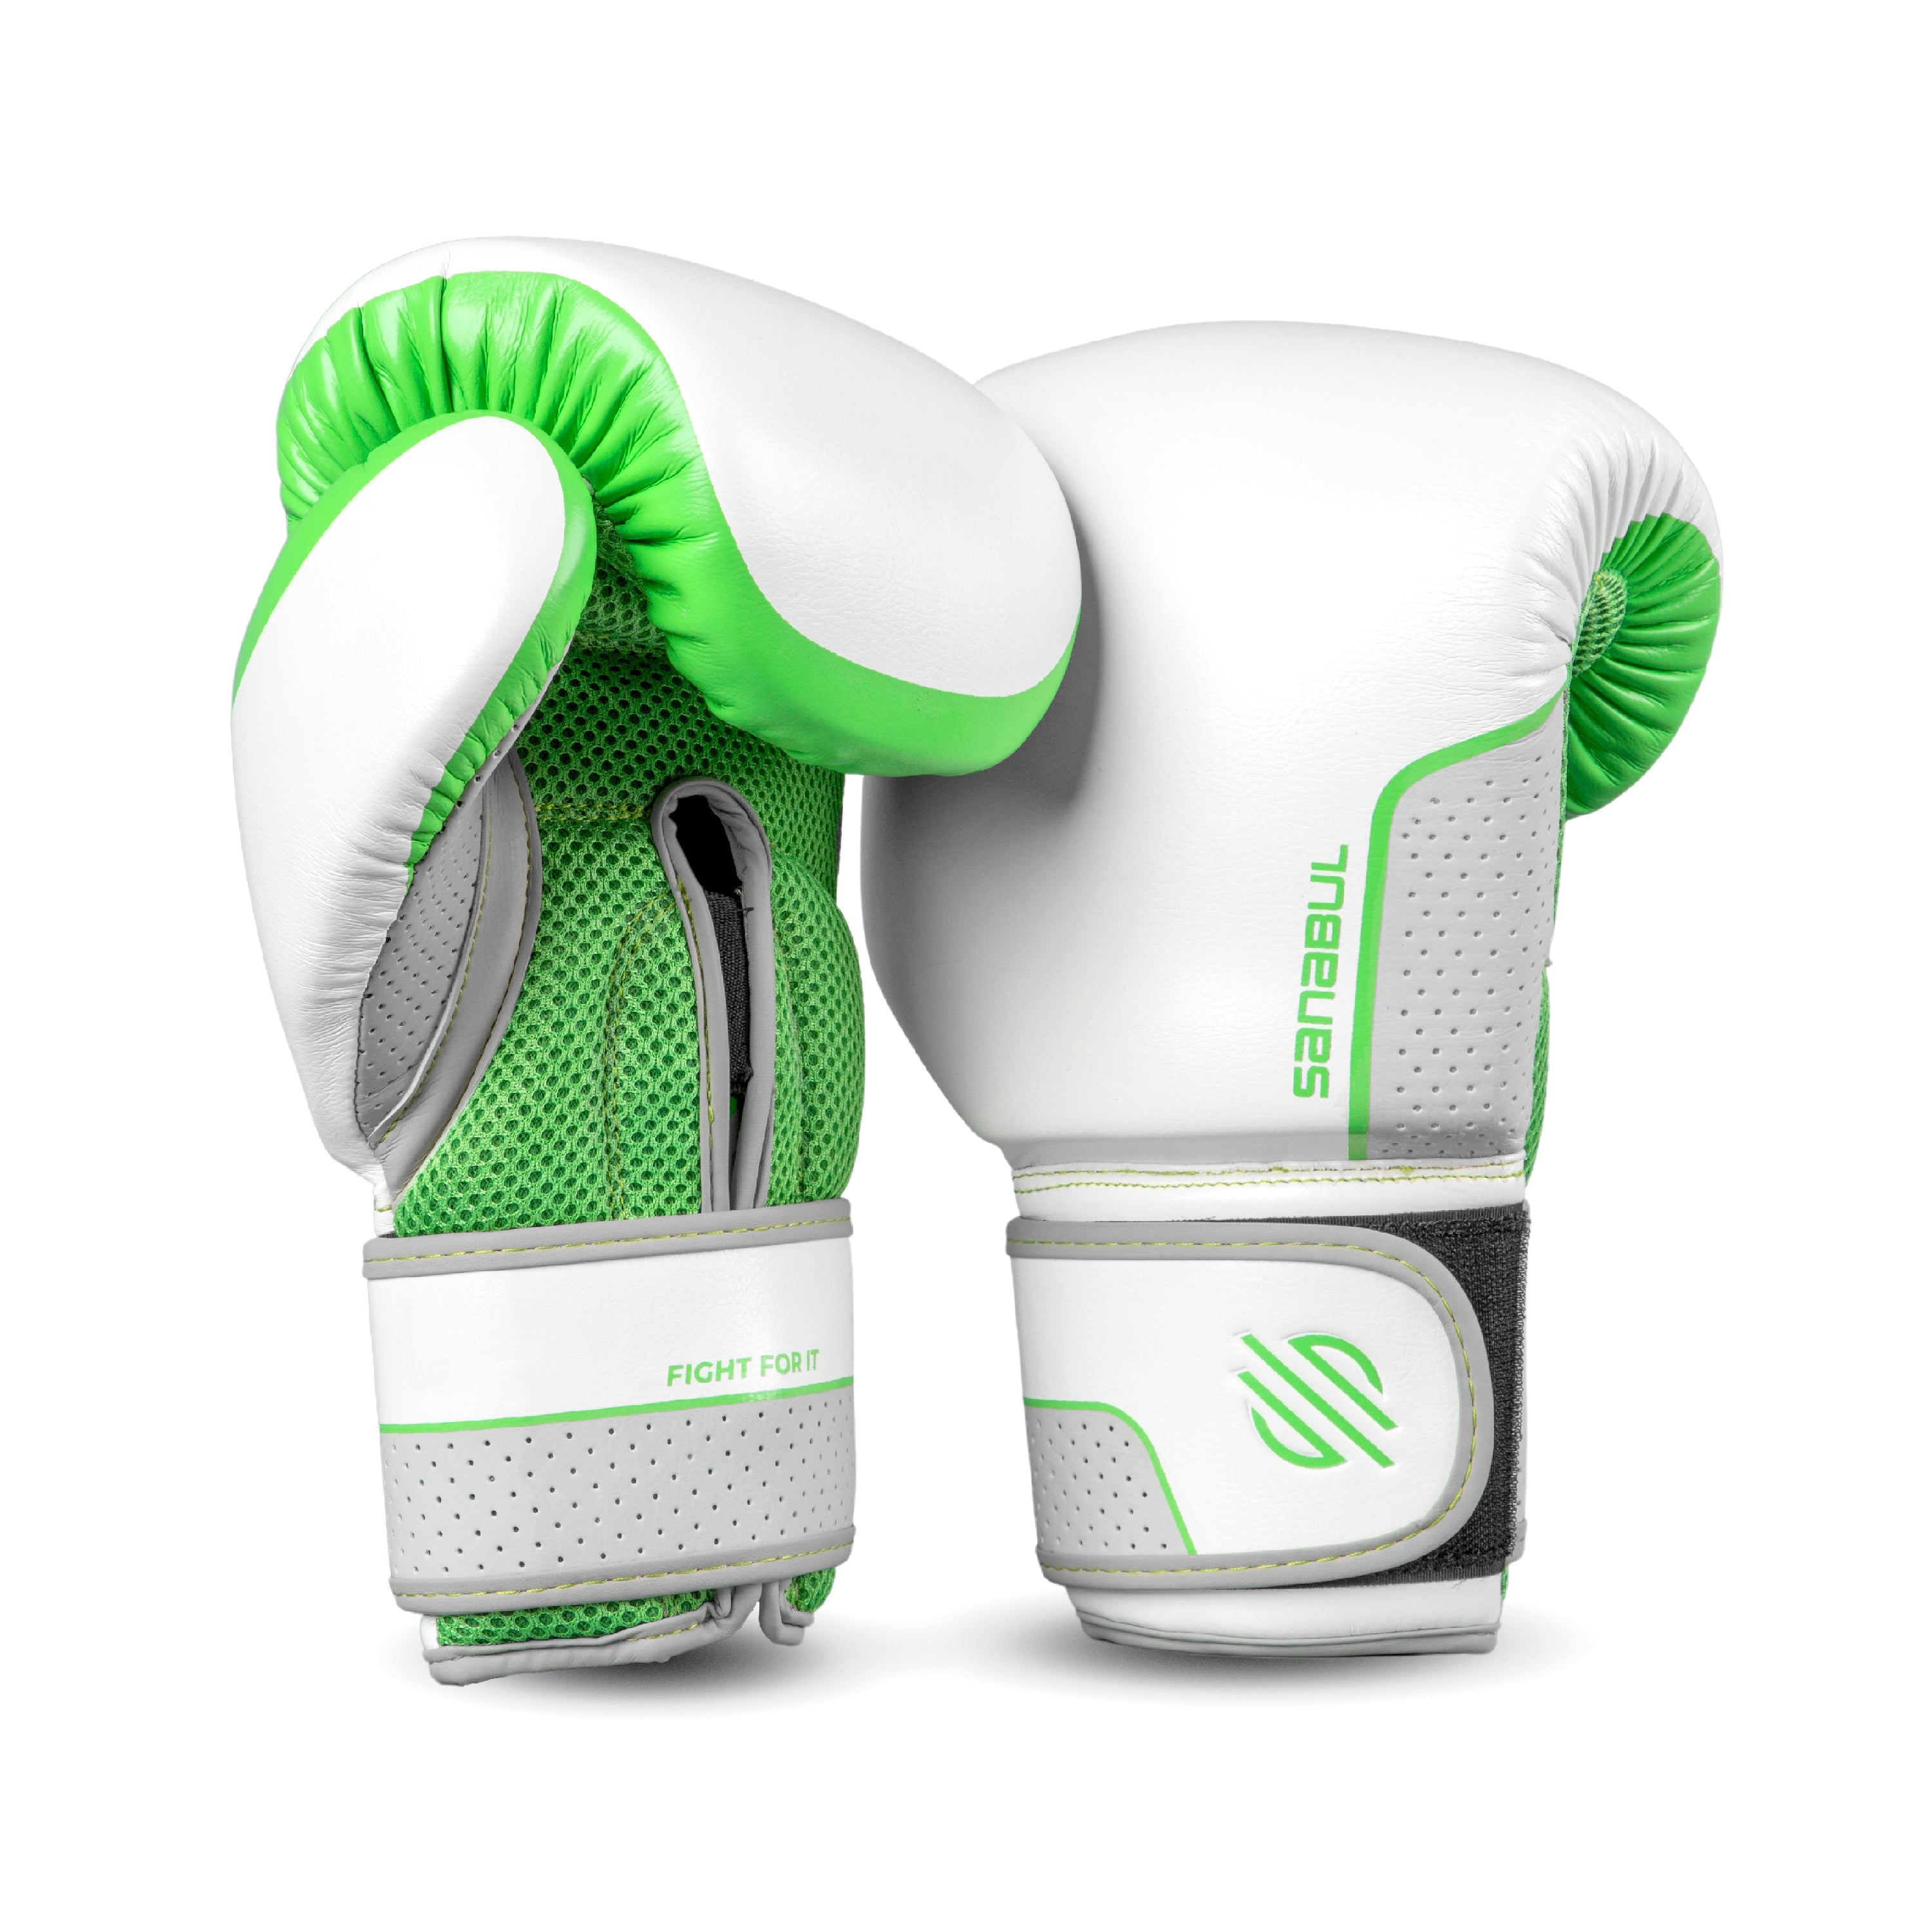 Hyperstrike Women's Boxing Gloves